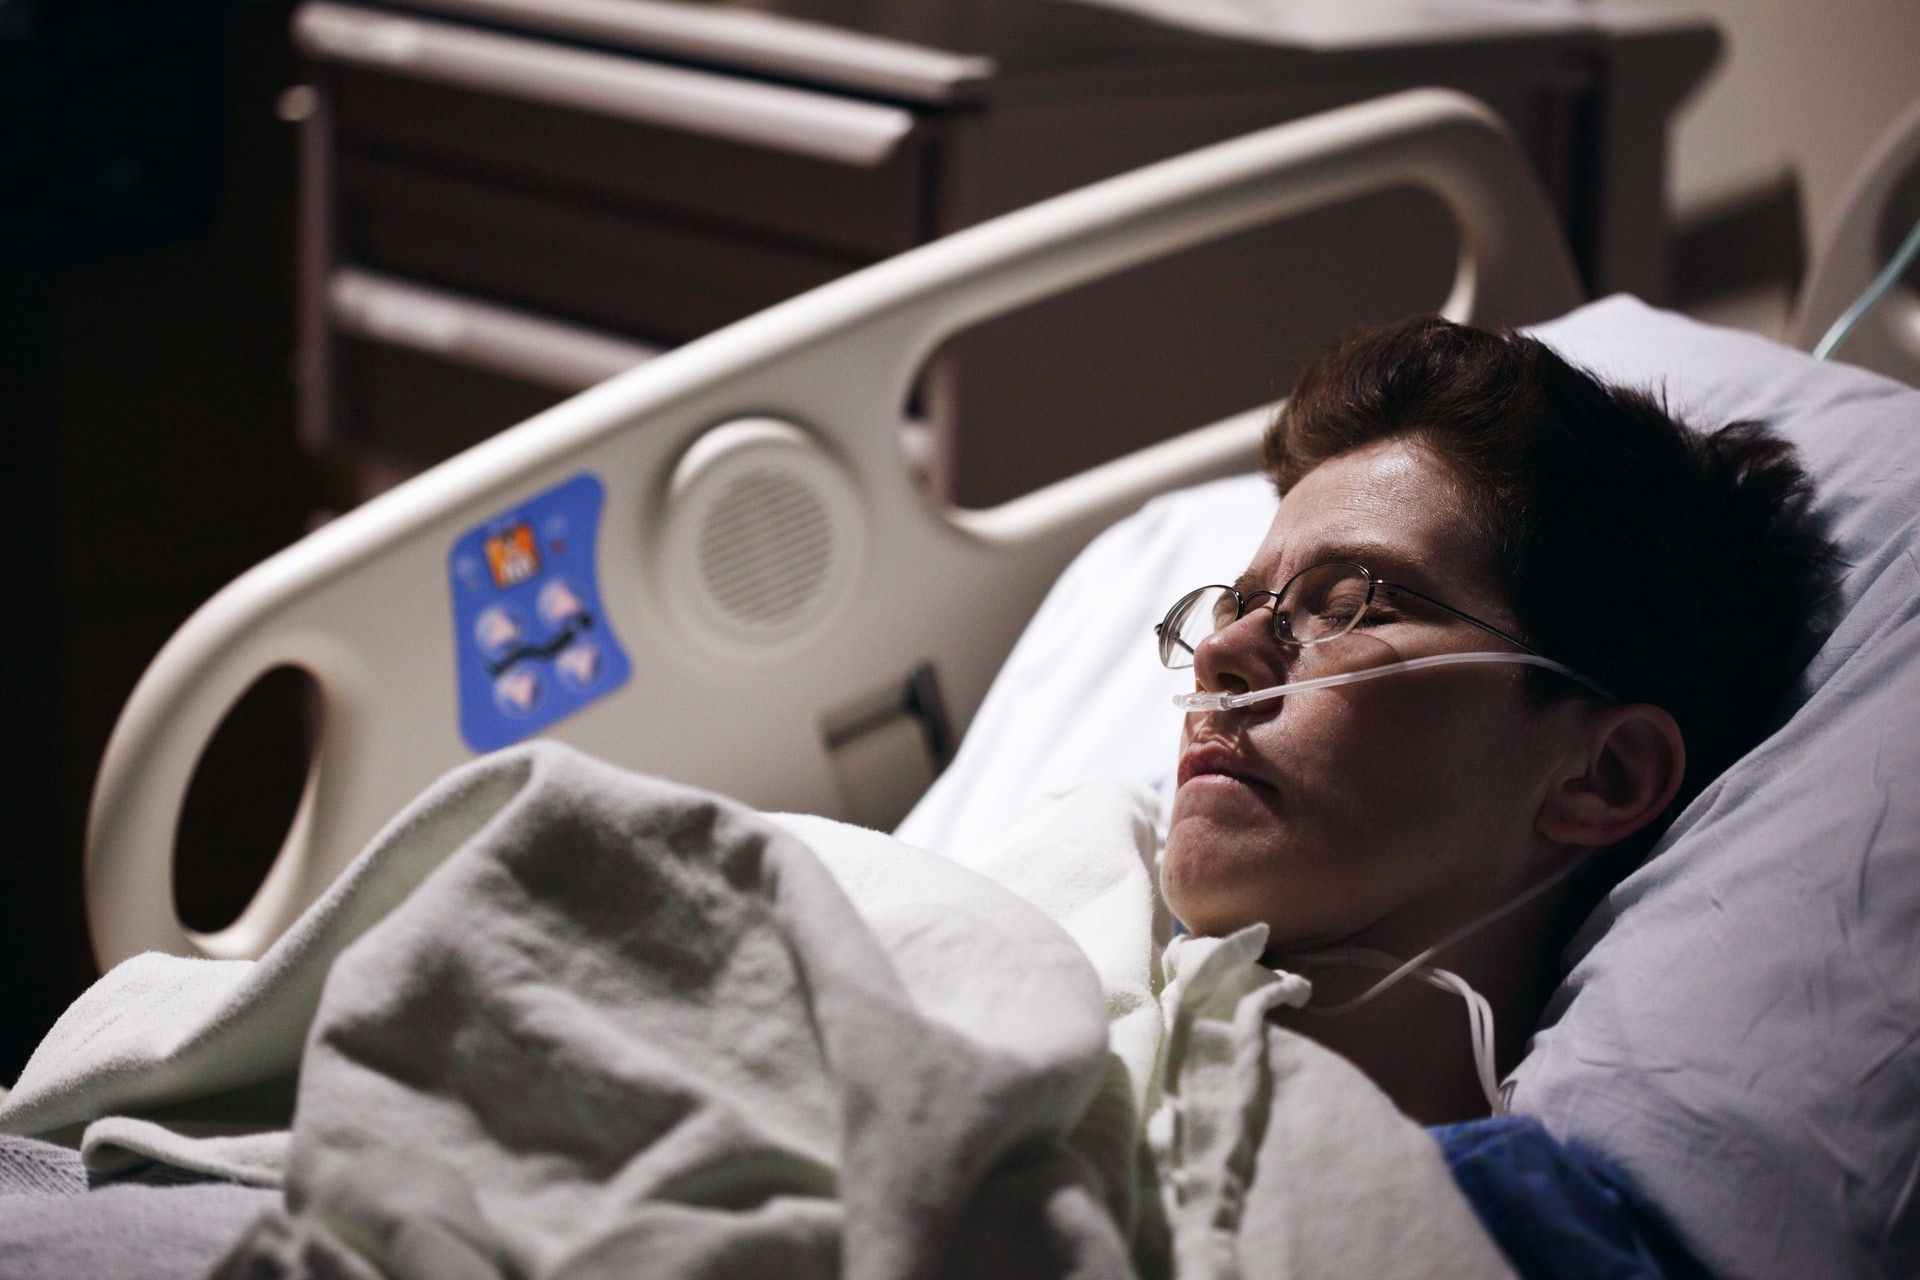 Pacientes hospitalizados com Covid-19 ainda têm problemas 1 ano após internação (Foto: Sharon McCutcheon/Unsplash)